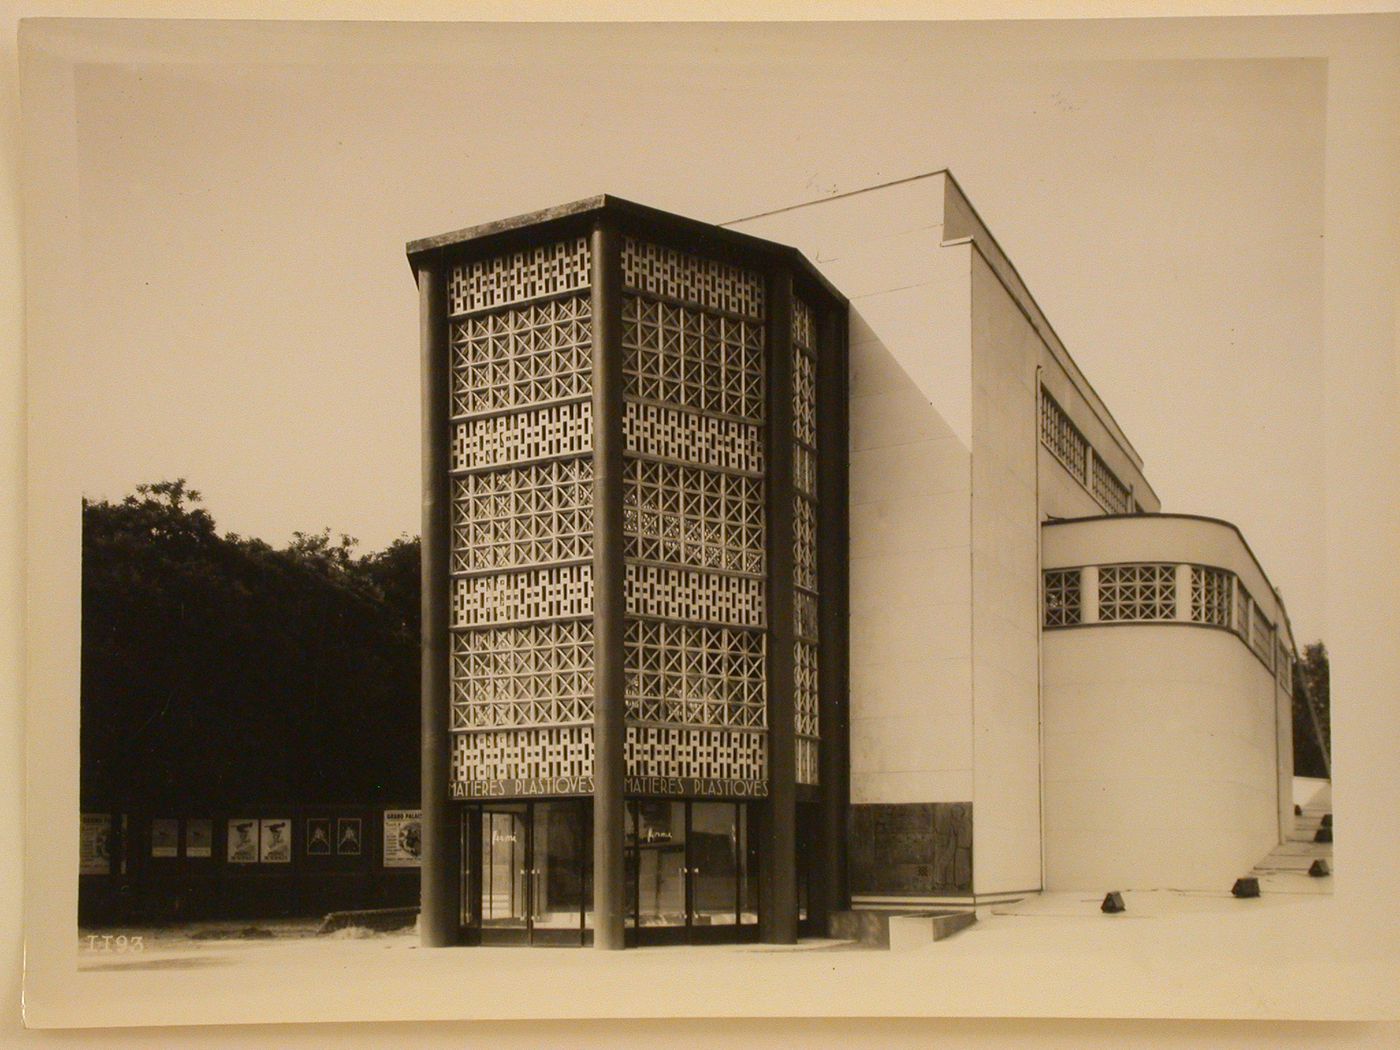 View of the Pavillon des Matières Plastiques, 1937 Exposition internationale, Paris, France